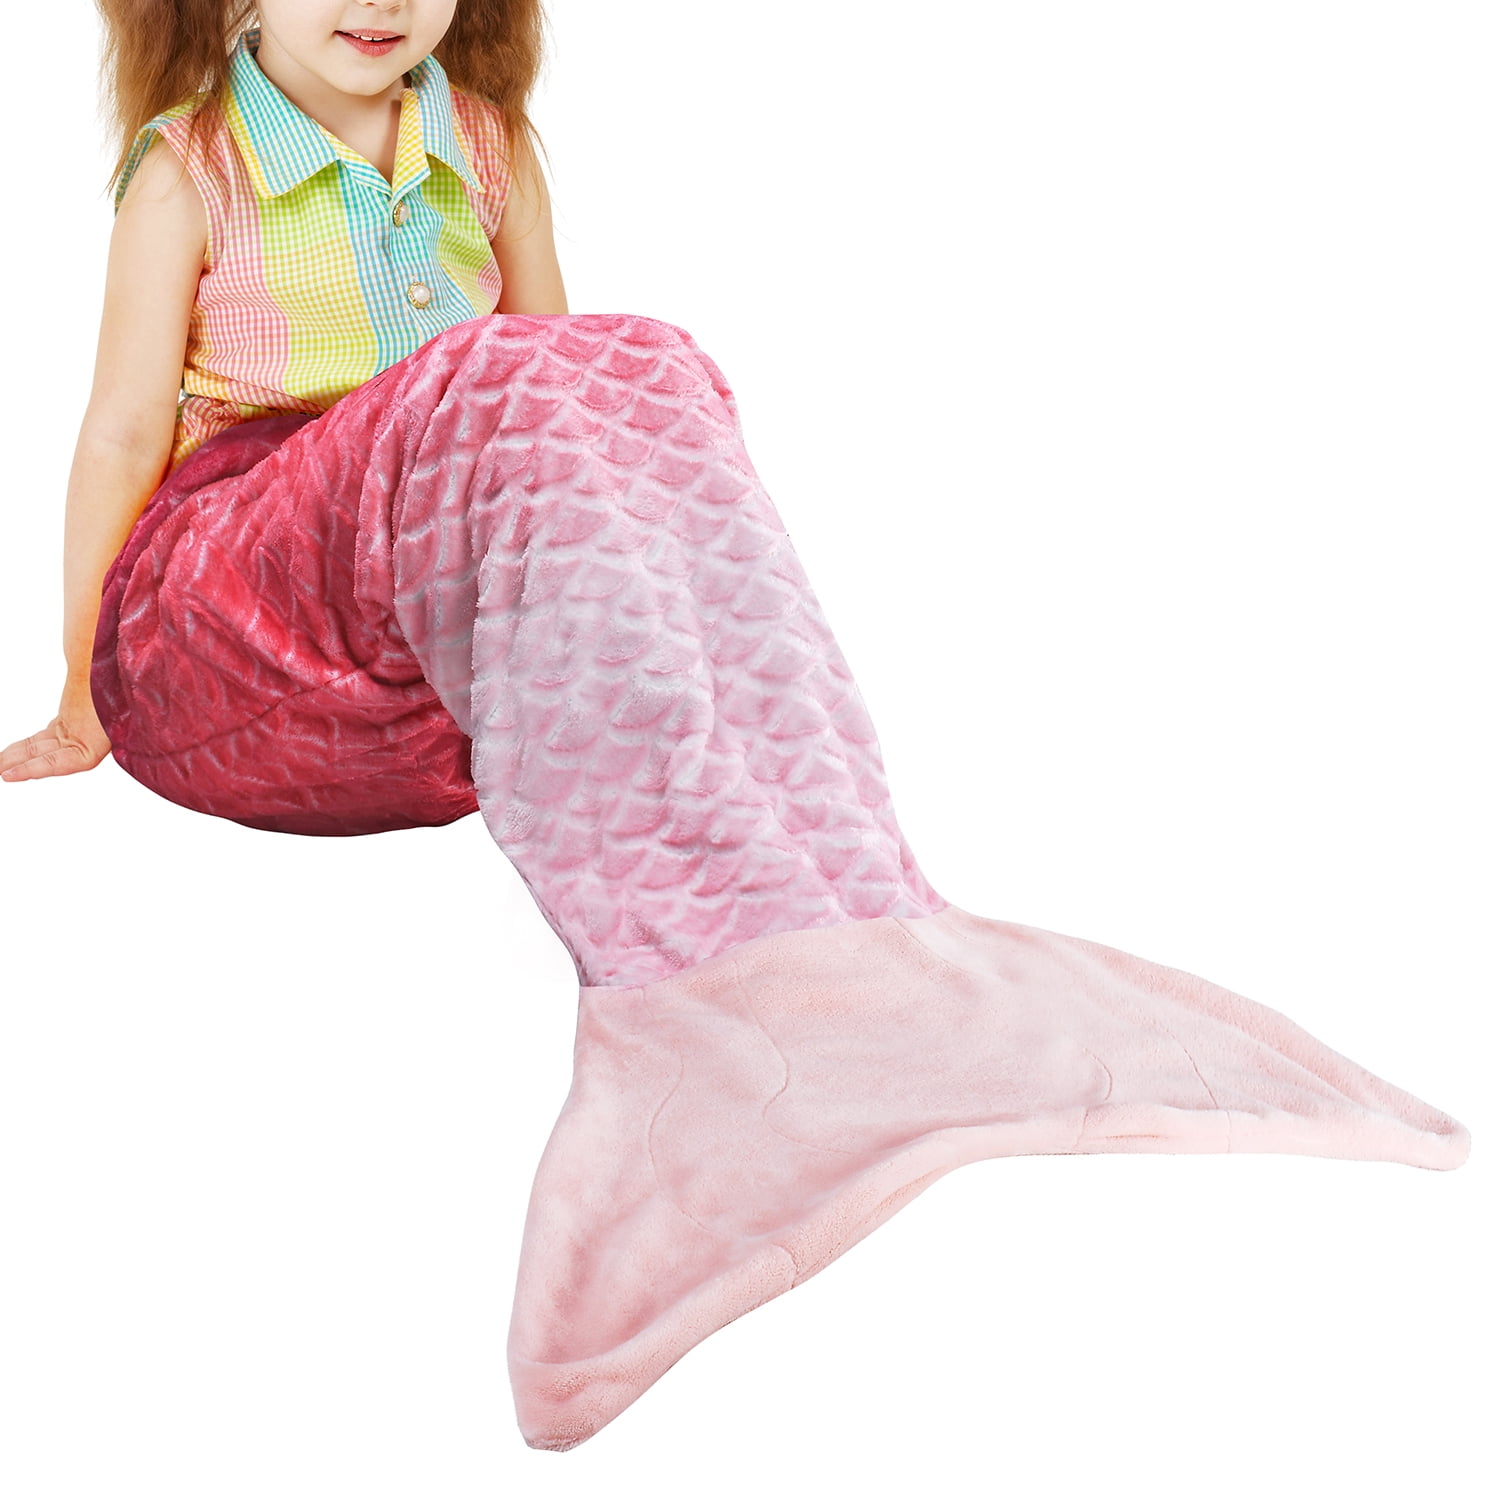 Viviland Kids Mermaid Tail Blanket for Girls Toddlers Teens,All Seasons Super Comfty Flannel Fleece Mermaid Sleeping Bag,Rainbow Mermaid Blanket,Best Gifts for Girls,17×39 